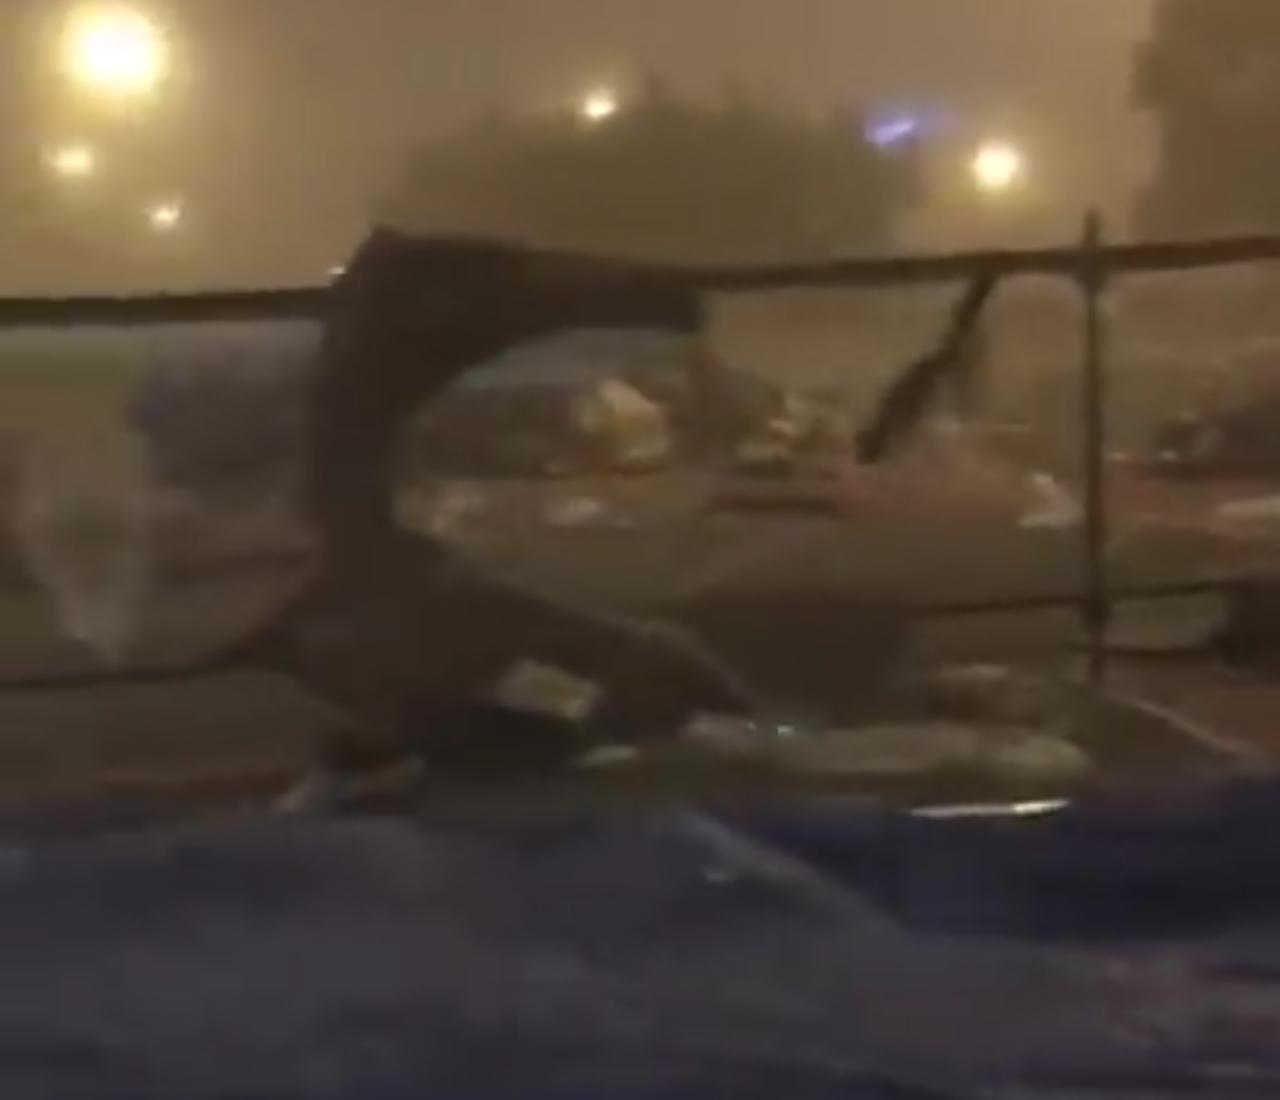 حجاج اردنيين بعرفات بلا خيام وكهرباء عقب العاصفة المطرية التي ضربت مكة والاوقاف ترد...الفيديو.